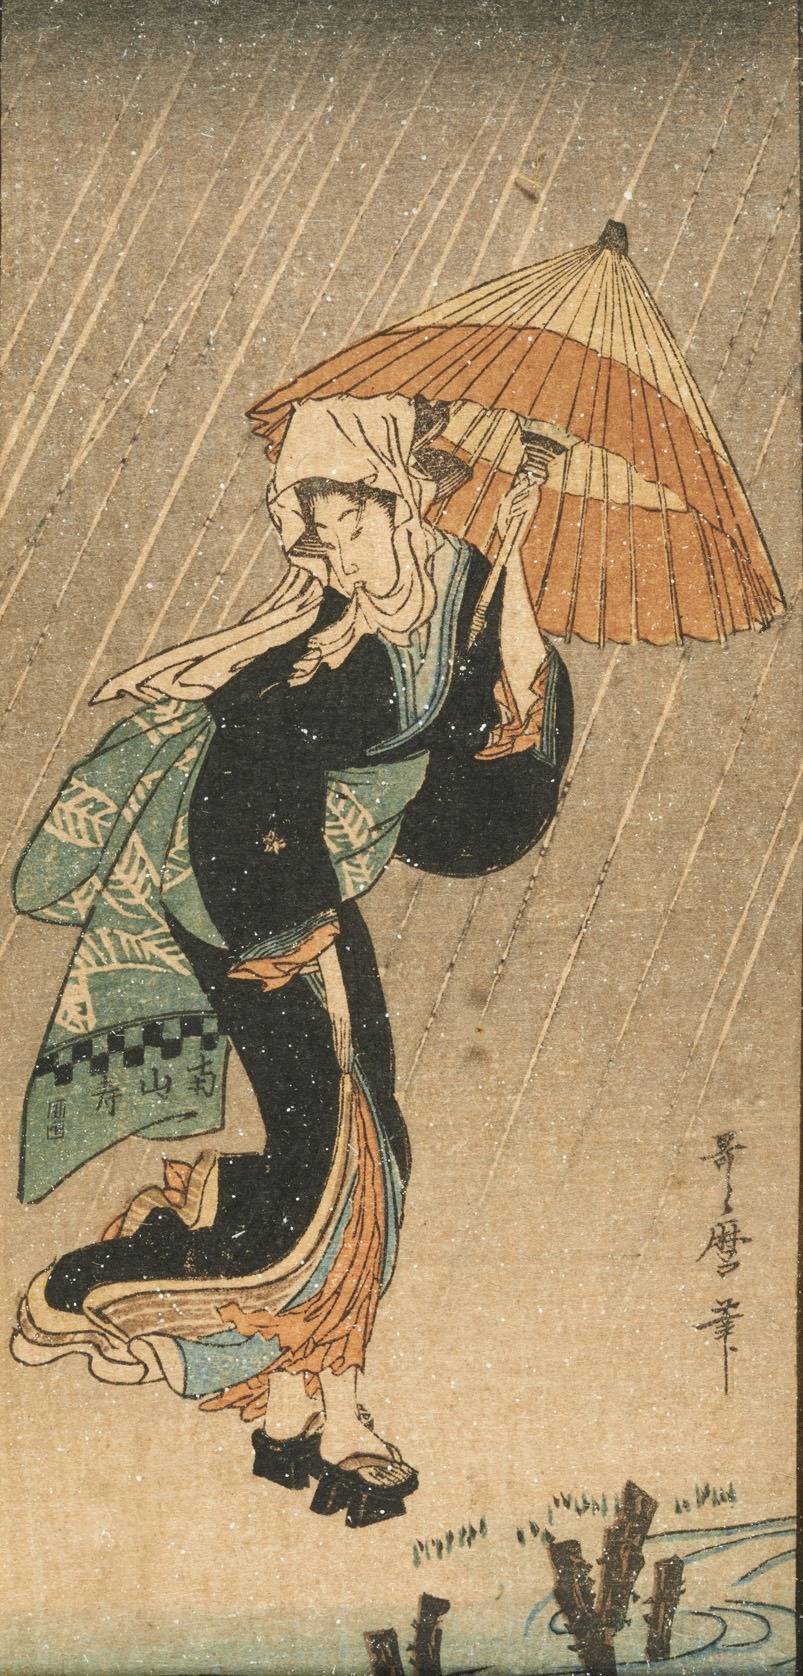 Áilleacht sa Bháisteach, c. 1802. Kitagawa Utamaro.